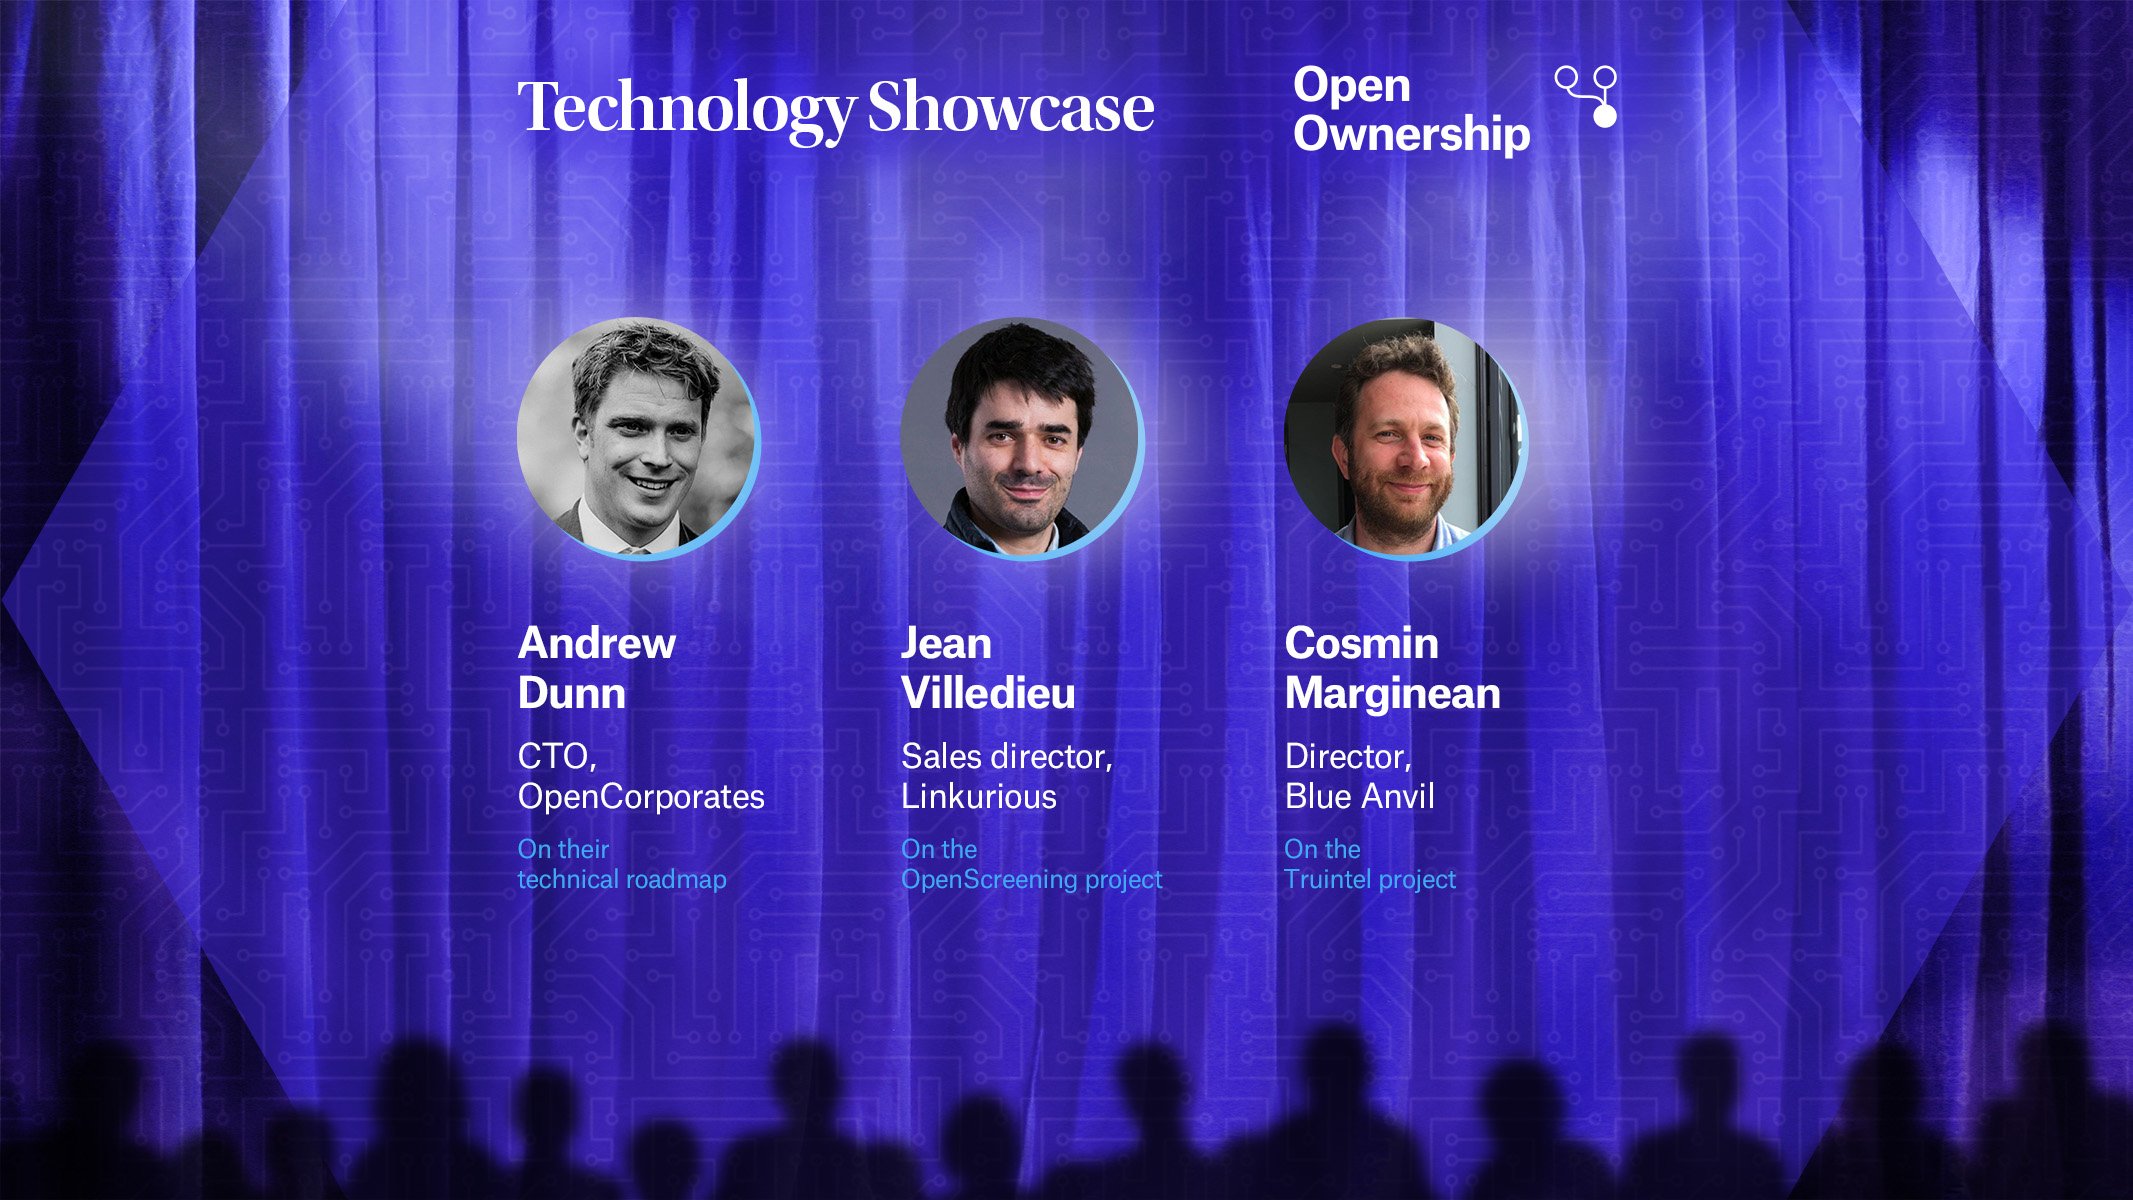 Open Ownership tech showcase #4